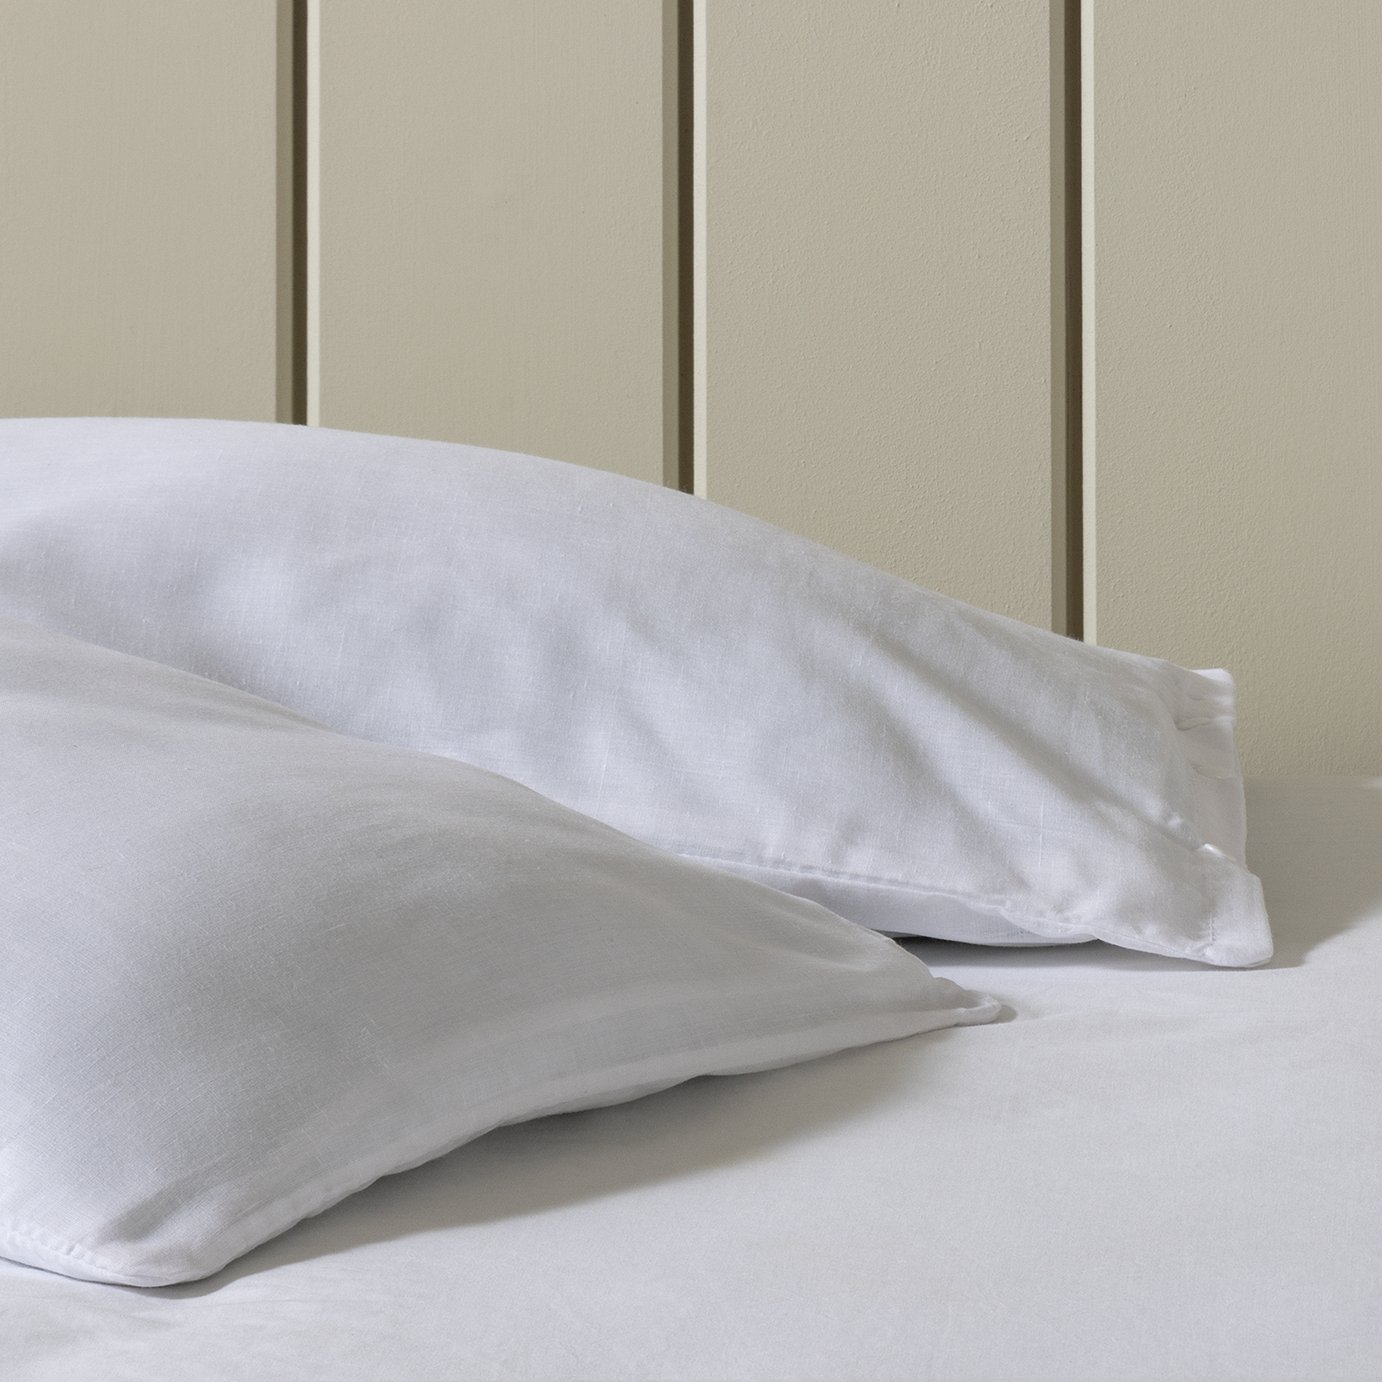 v shaped pillow